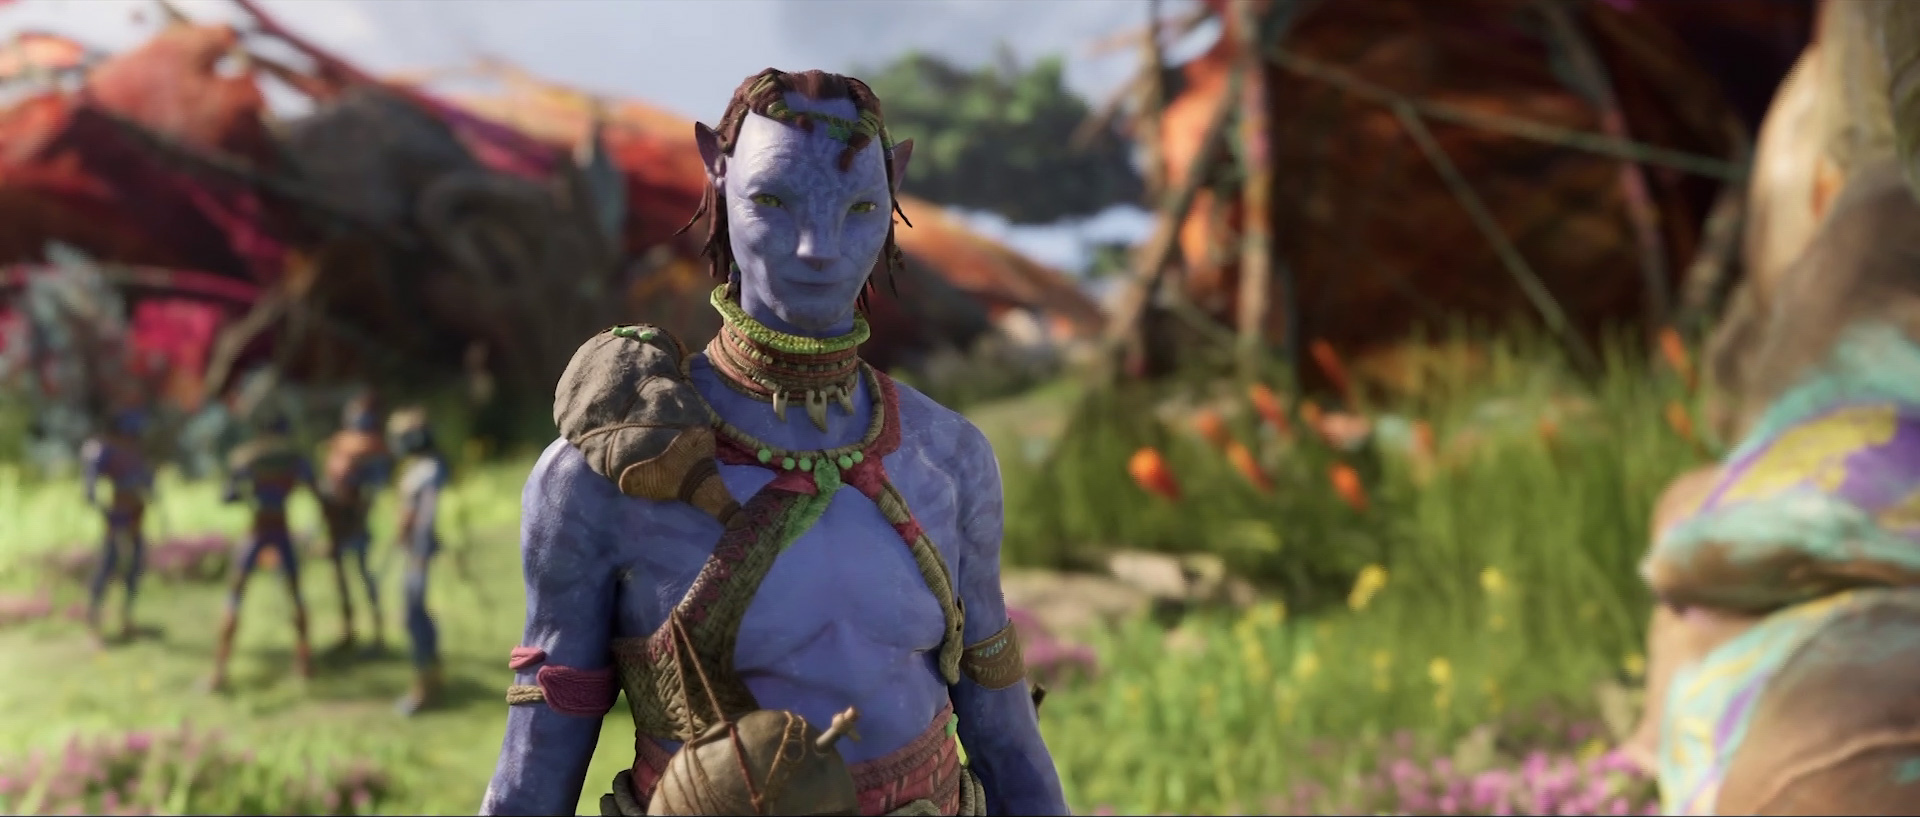 Ubisofts Avatar: Frontiers of Pandora-Spiel kommt noch dieses Jahr